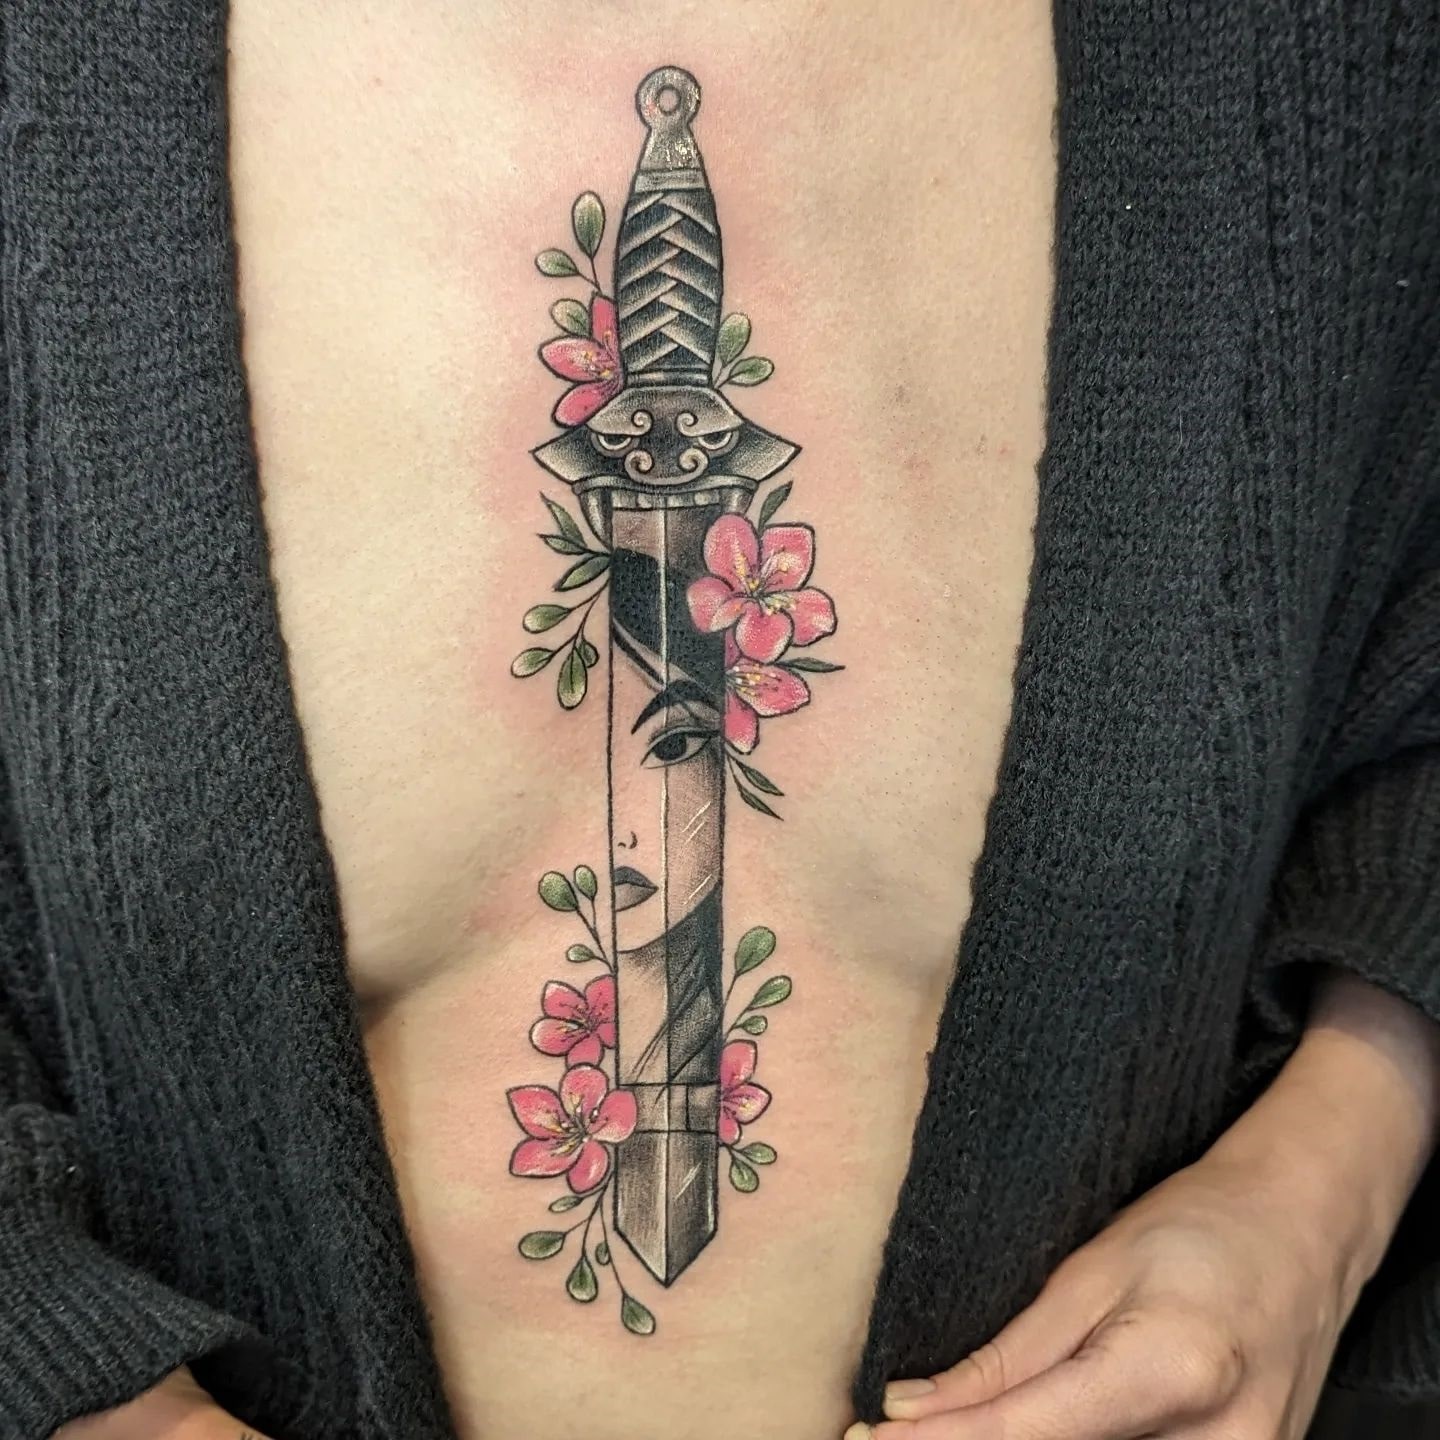 Stary tatuaż na mostku z mieczem